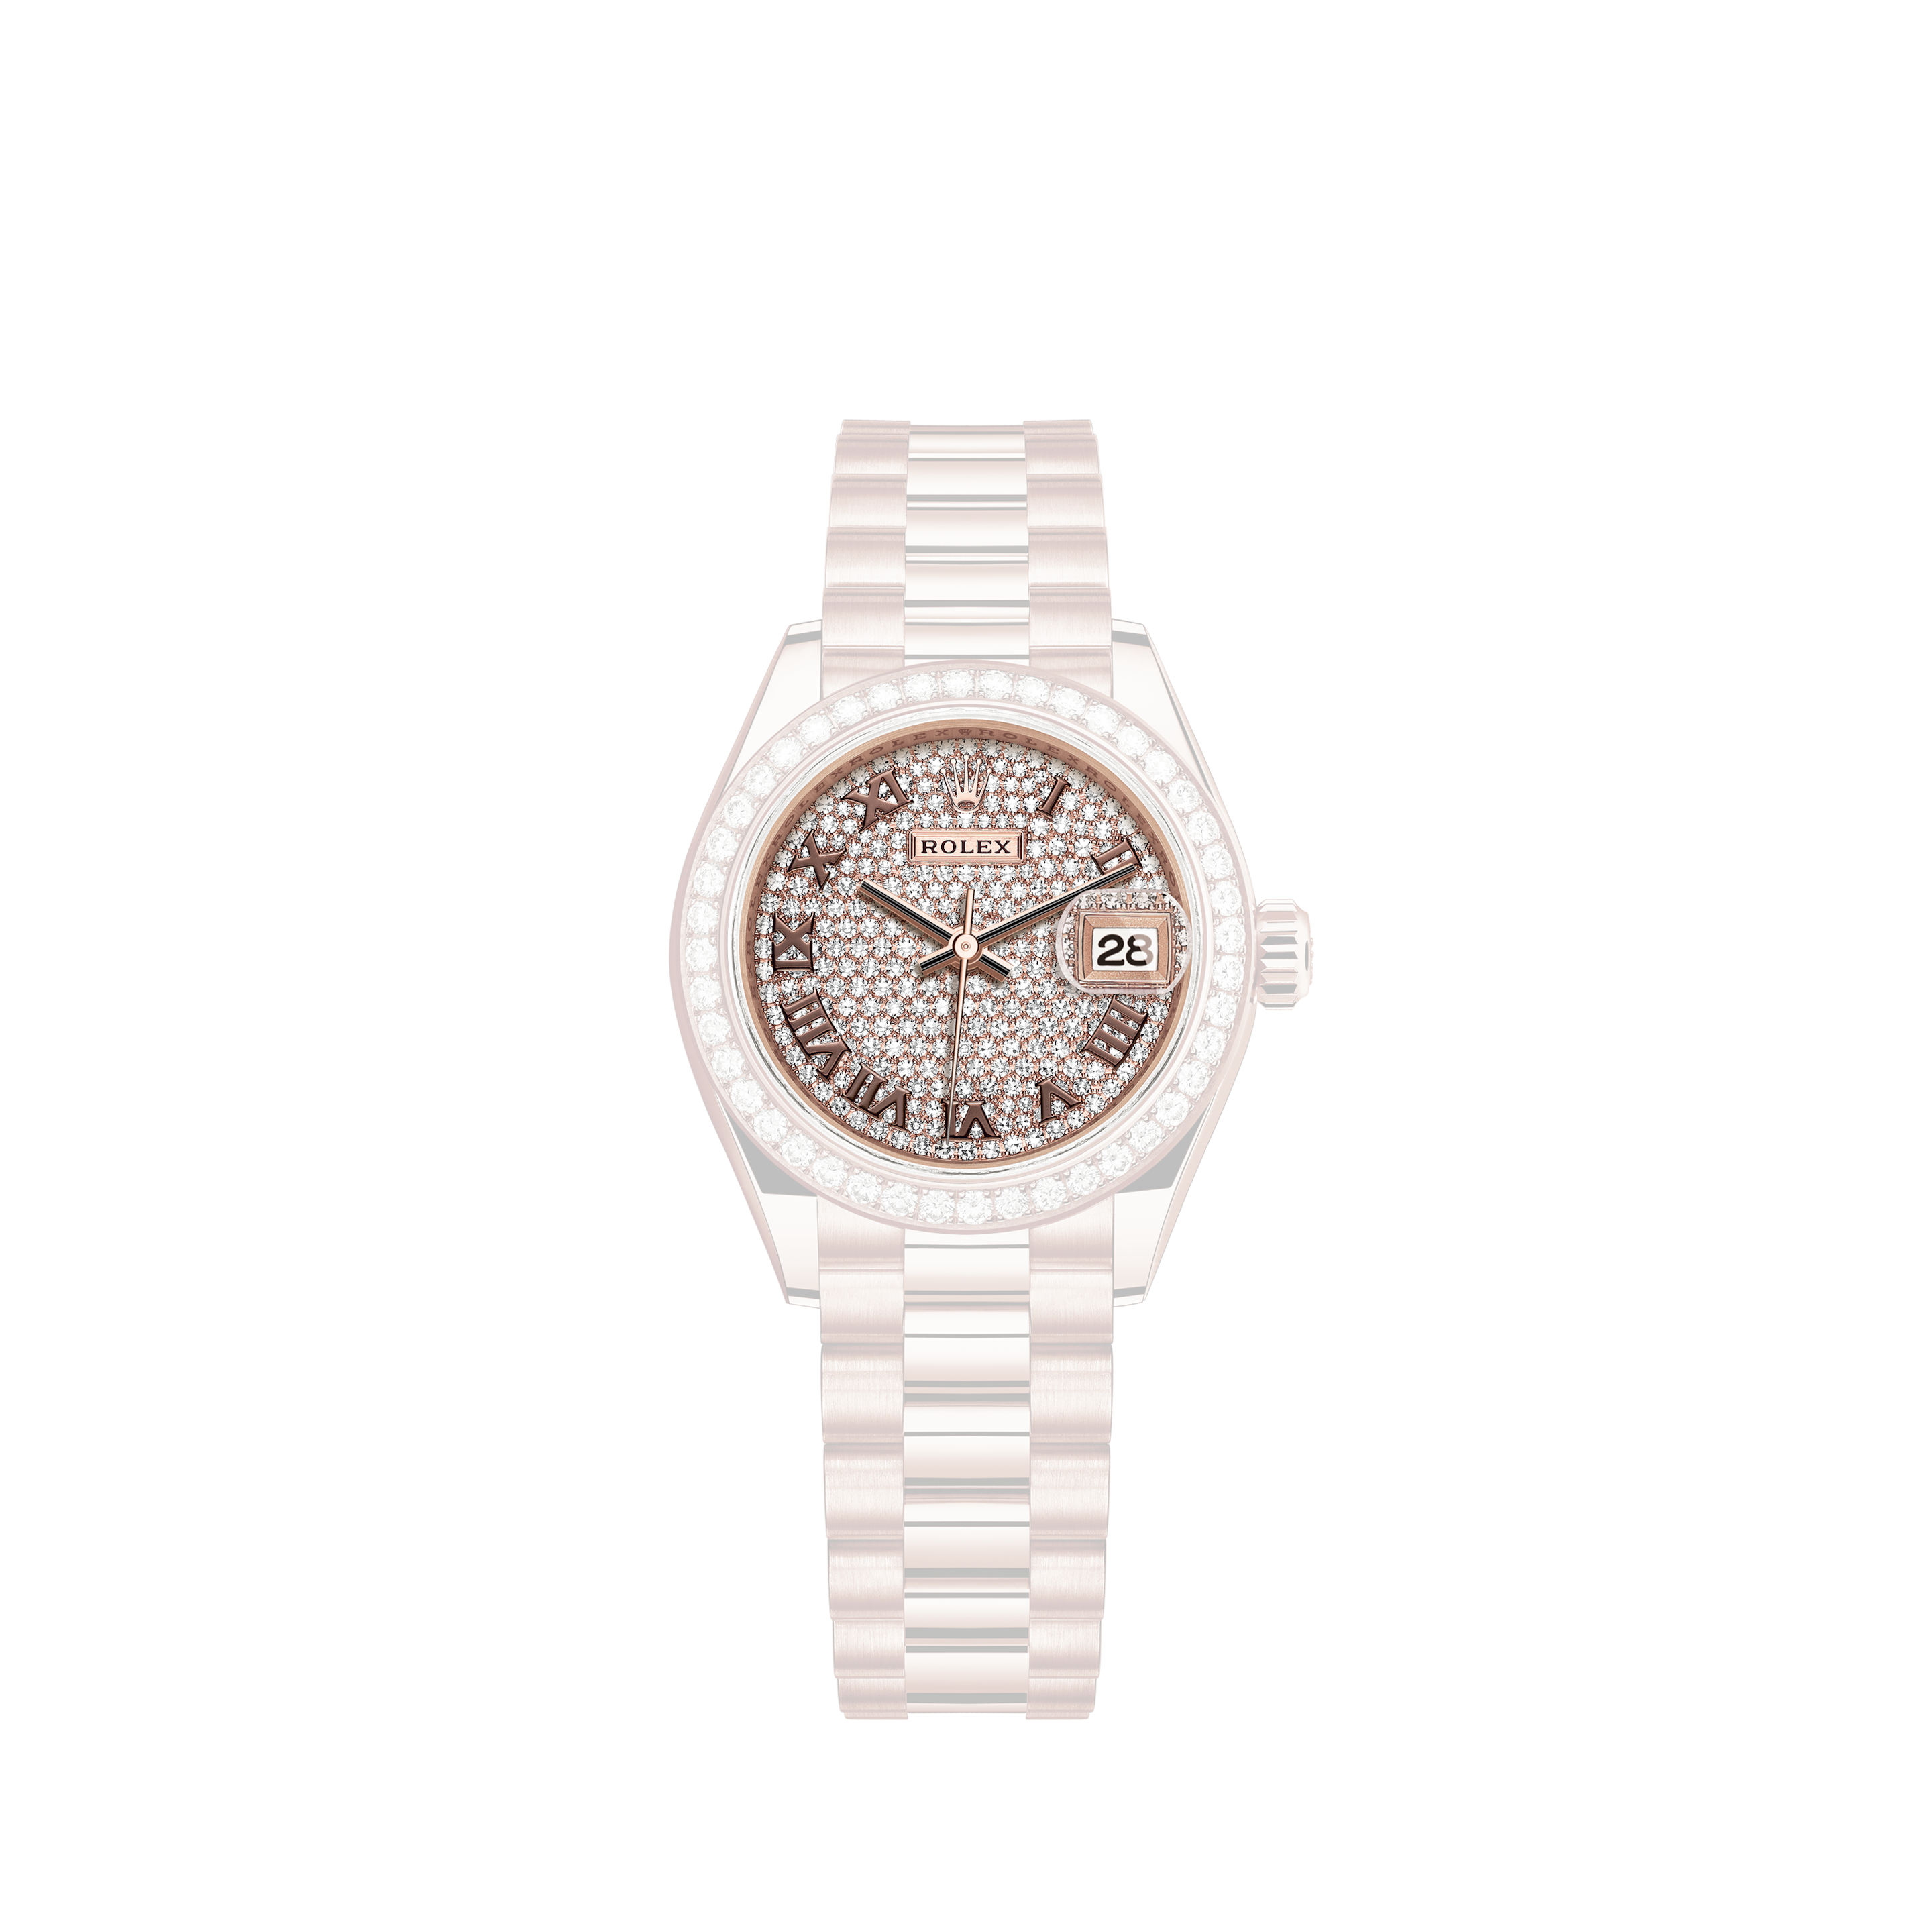 Rolex Rolex Rolex GMT Master II 16710 Black Dial Used Watch men's watches